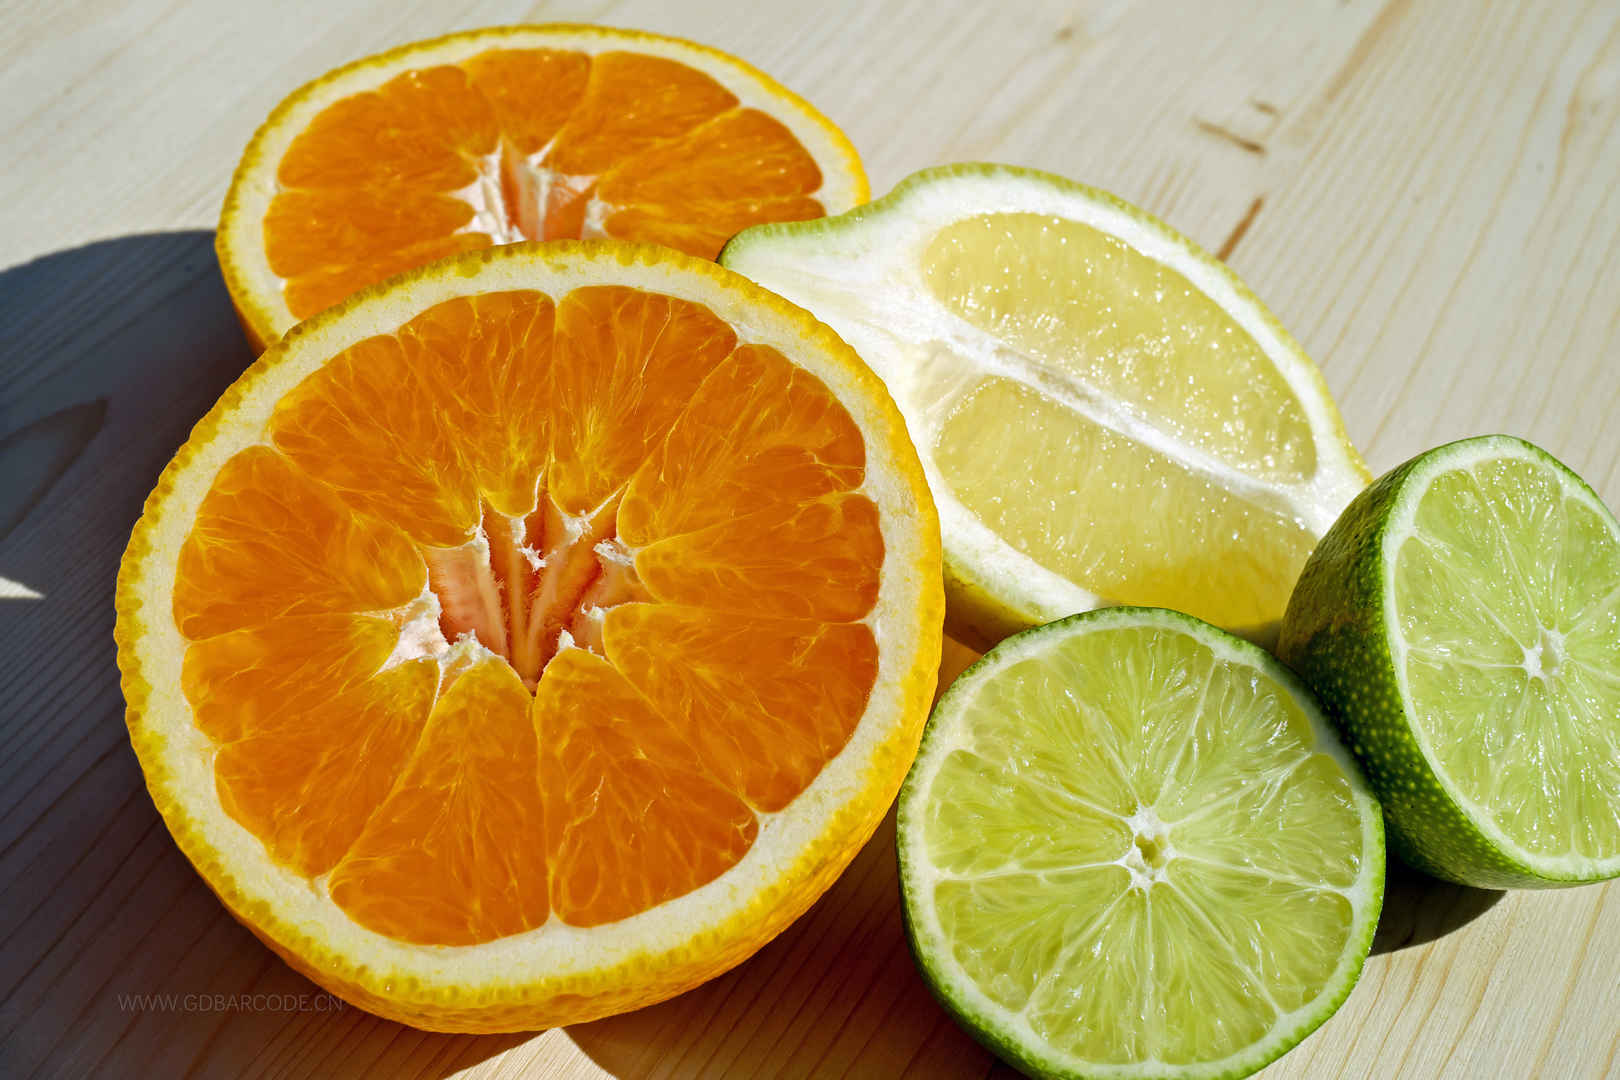 水果 热带水果 柑橘类水果 切片 橙 柠檬 美味-